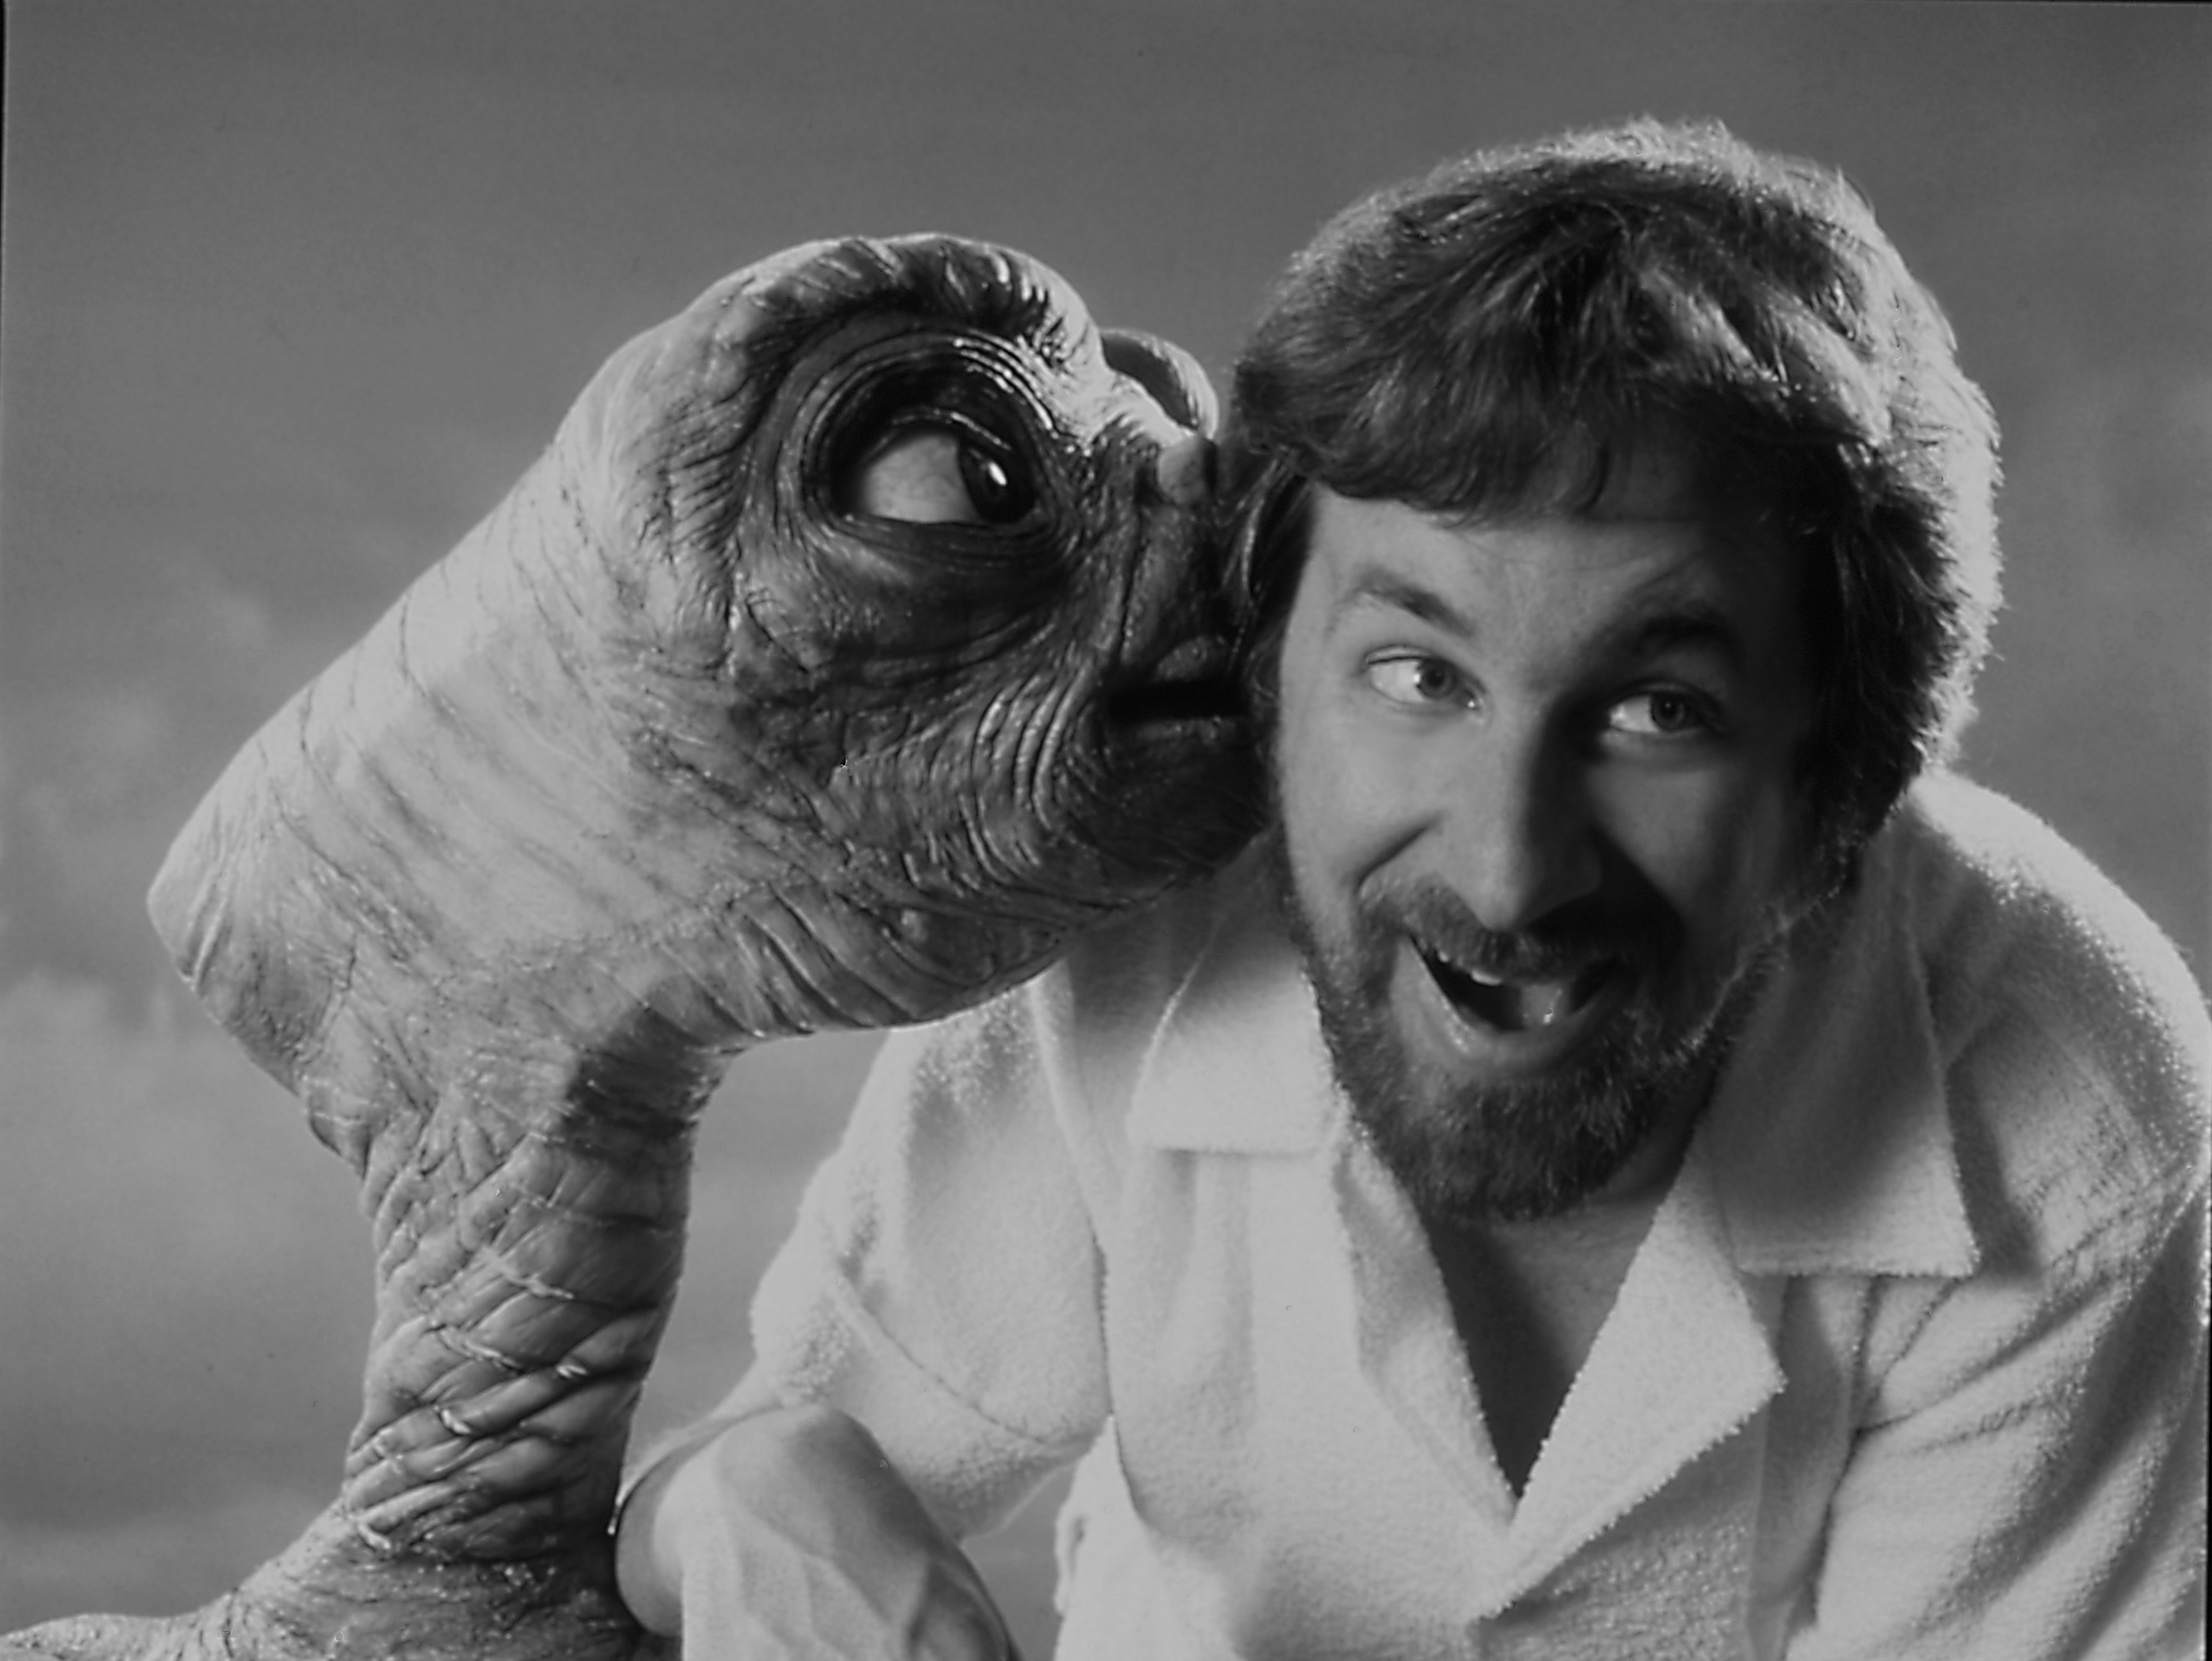 Steven Spielberg and E.T.